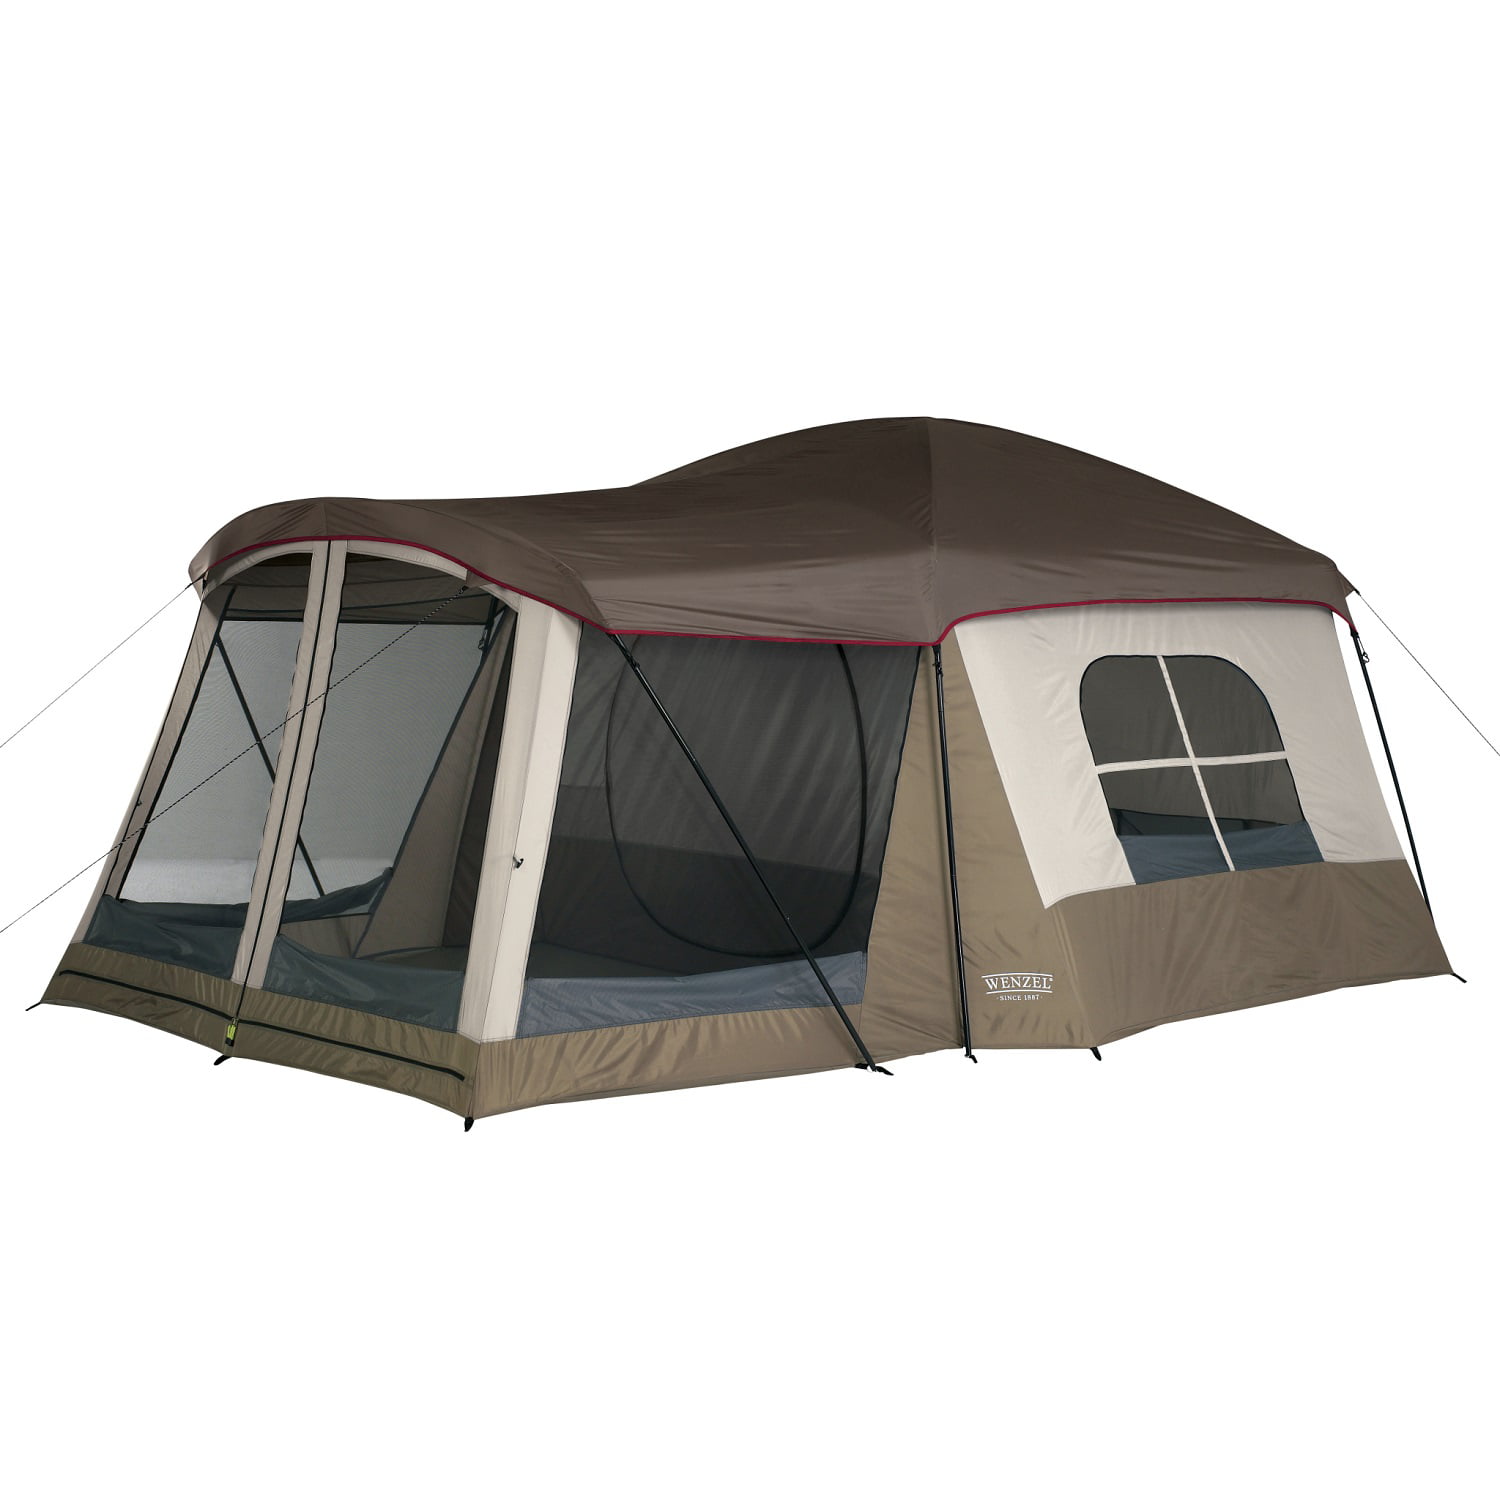 Nouveau Coleman 8-personne Carlsbad chambre sombre Dôme Tente Camping avec écran Salle 2 RM 